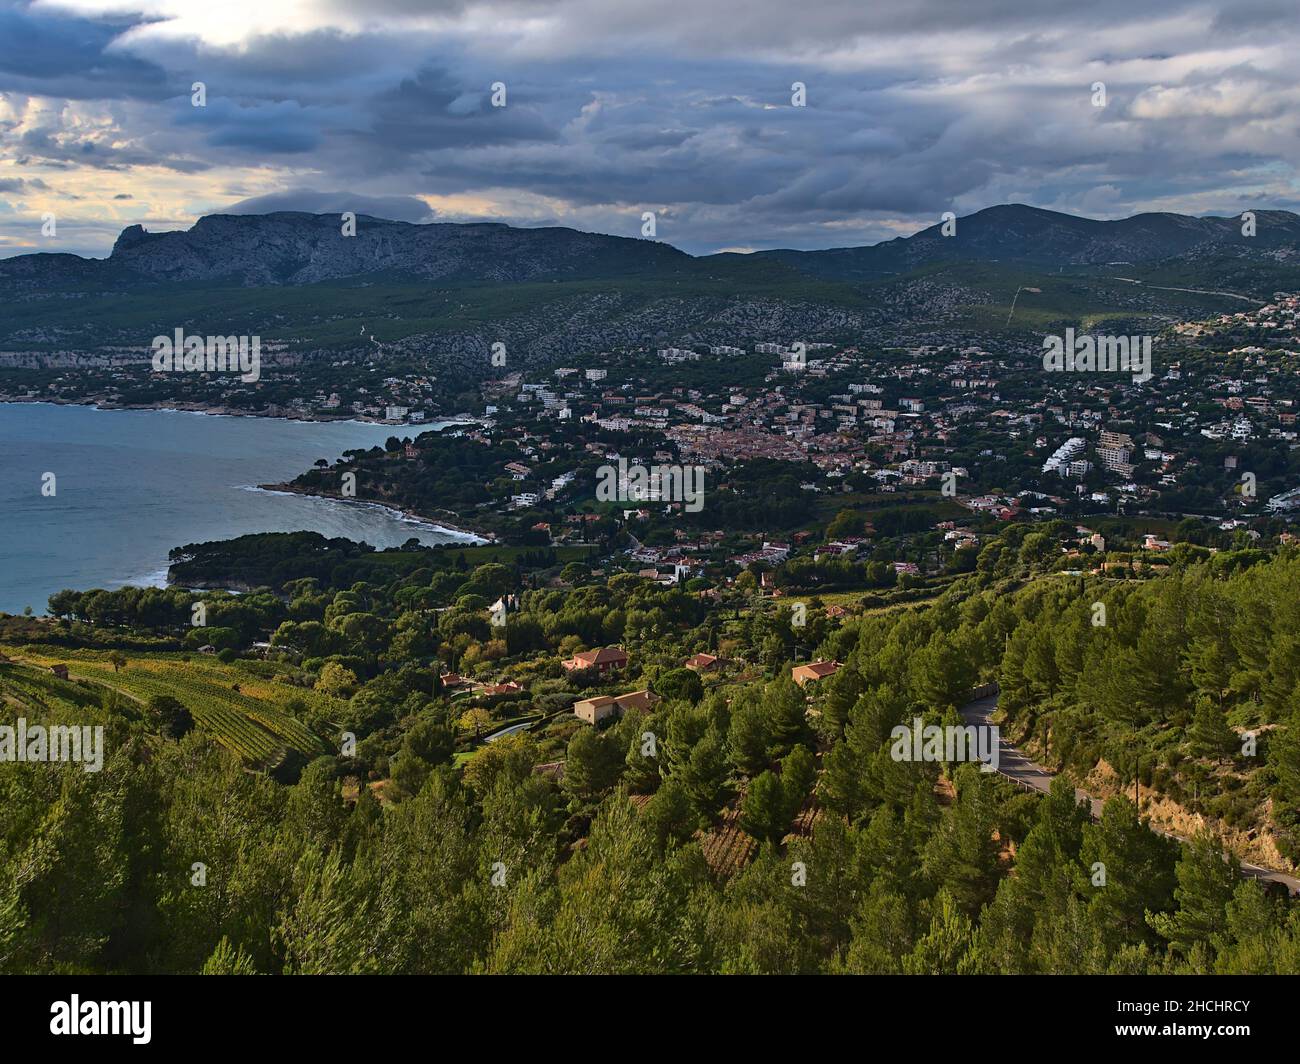 Schöne Aussicht auf die kleine Stadt Cassis, Französische Riviera am mittelmeer mit den Bergen des Massif des Calanques im Hintergrund. Stockfoto